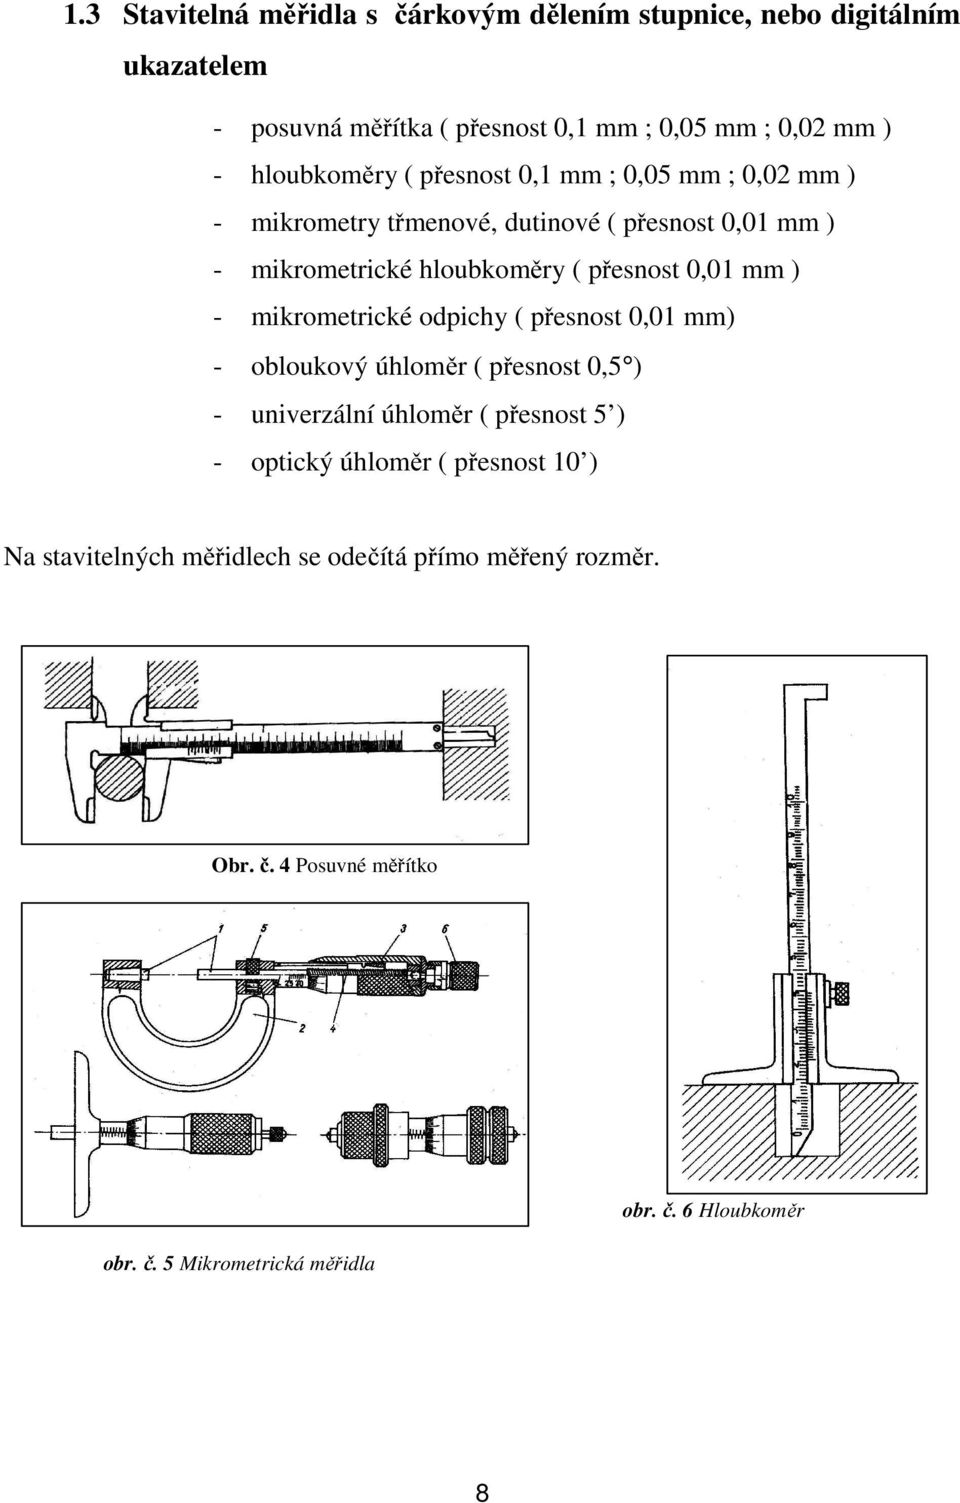 0,01 mm ) - mikrometrické odpichy ( přesnost 0,01 mm) - obloukový úhloměr ( přesnost 0,5 ) - univerzální úhloměr ( přesnost 5 ) - optický úhloměr